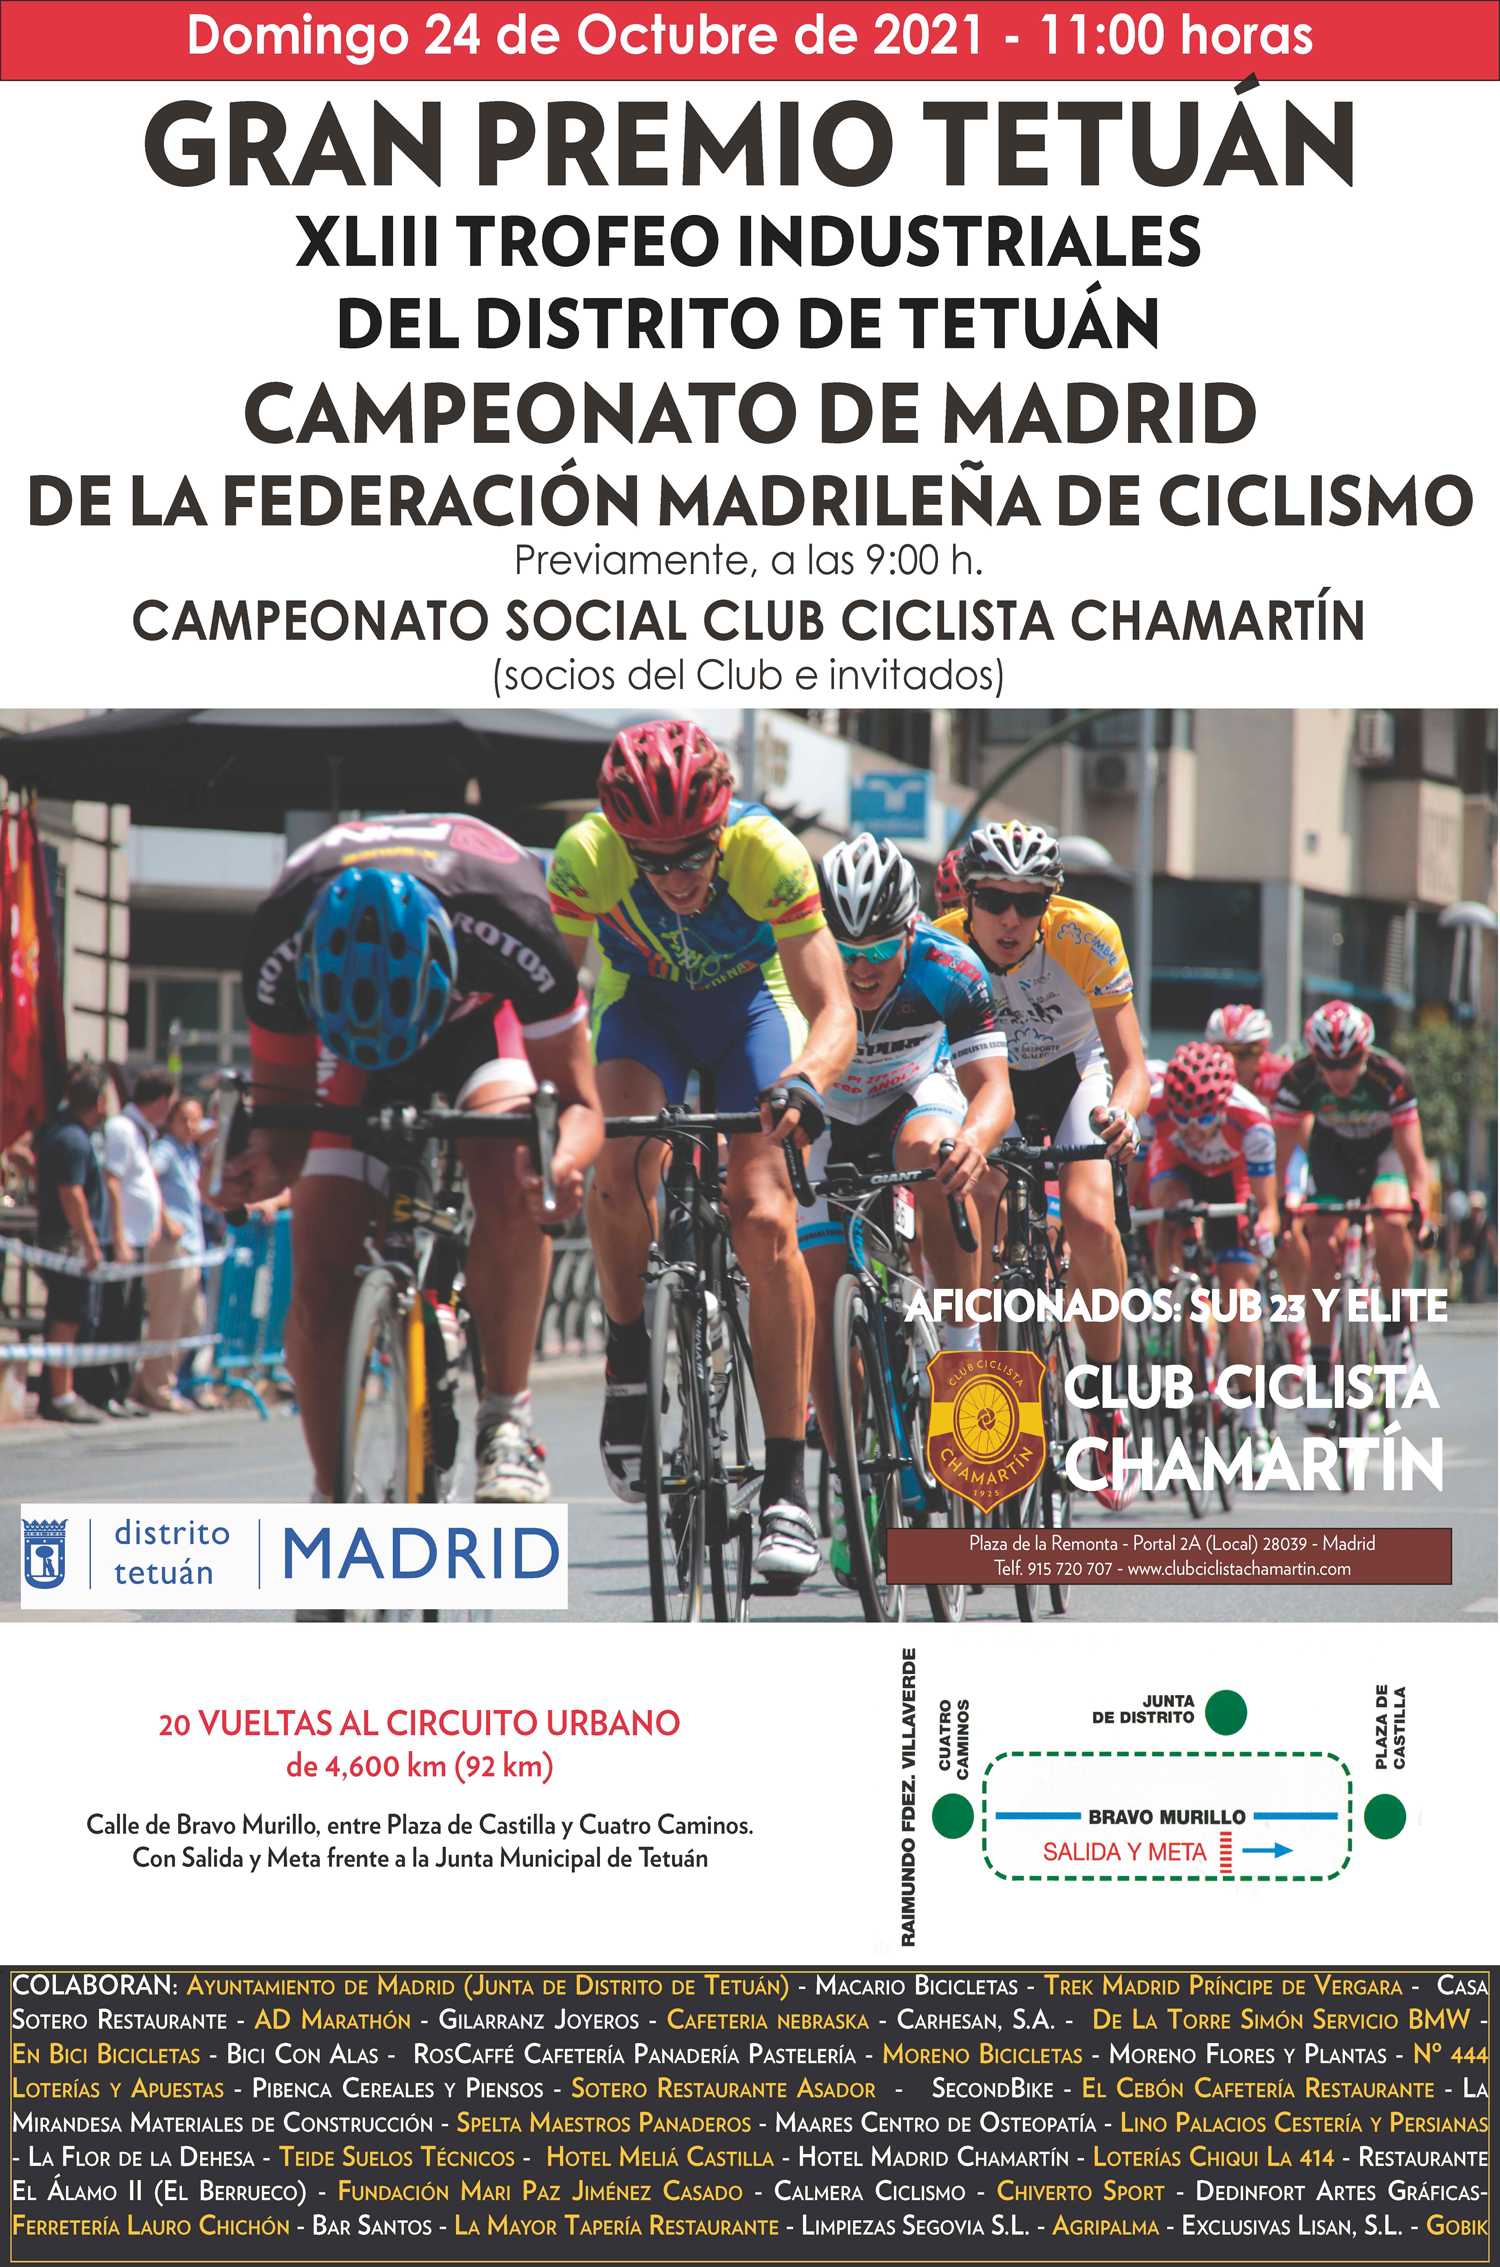 Los Campeonatos de Madrid elite-sub23 se dirimen en el XLIII Trofeo Industriales de Tetuán